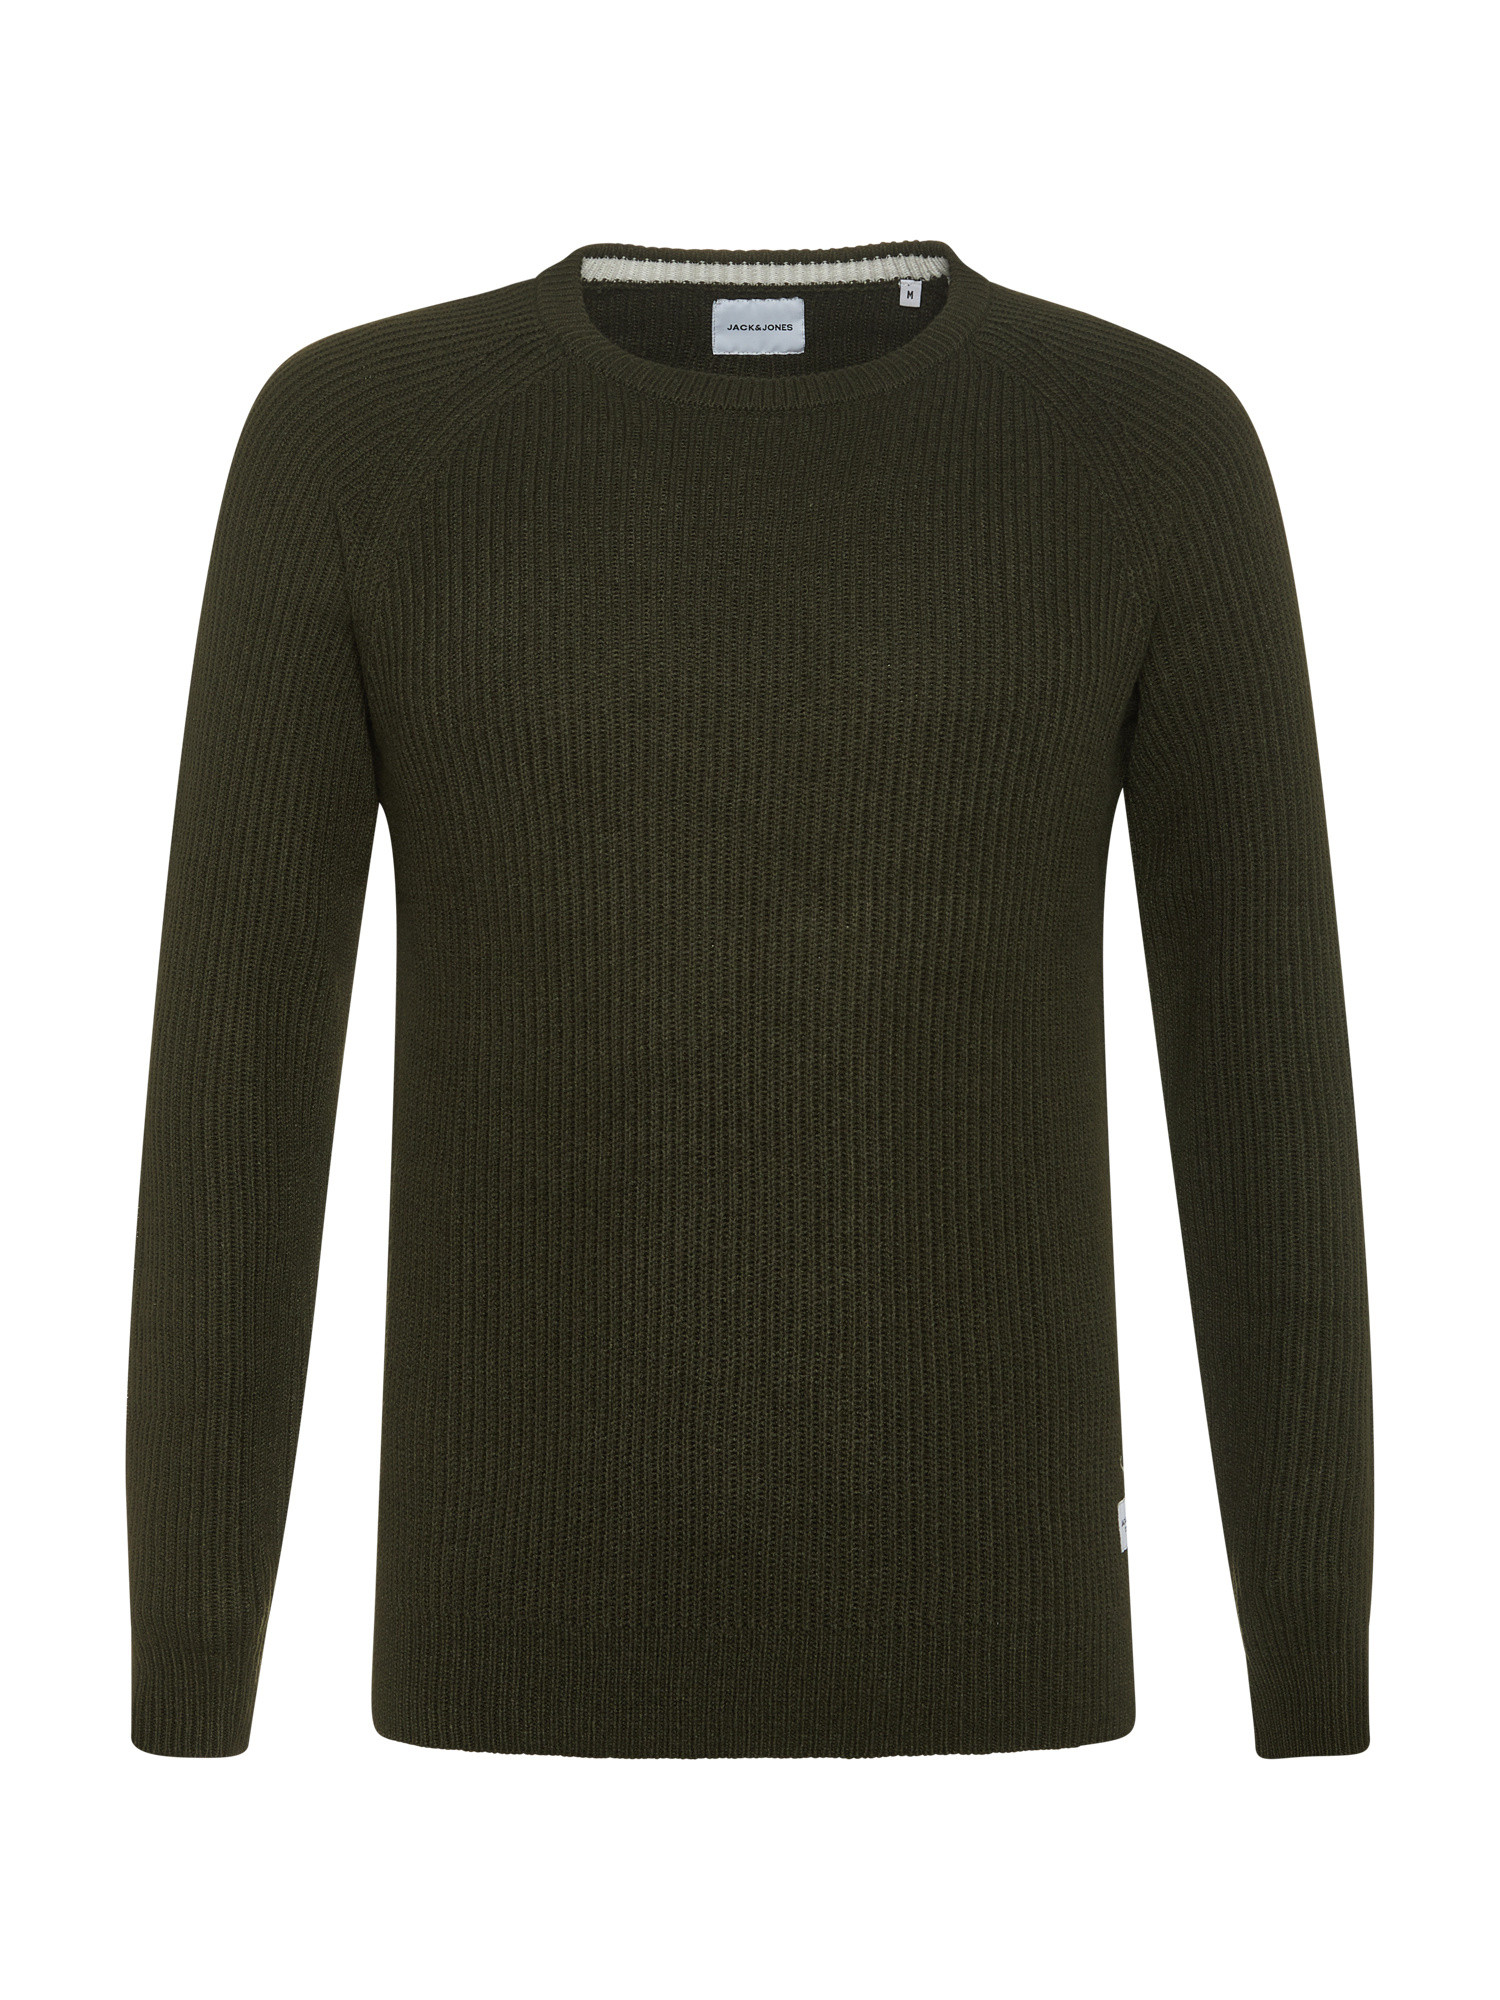 Вязаный свитер в рубчик Jack & Jones, темно-зеленый женский вязаный свитер с круглым вырезом object серый